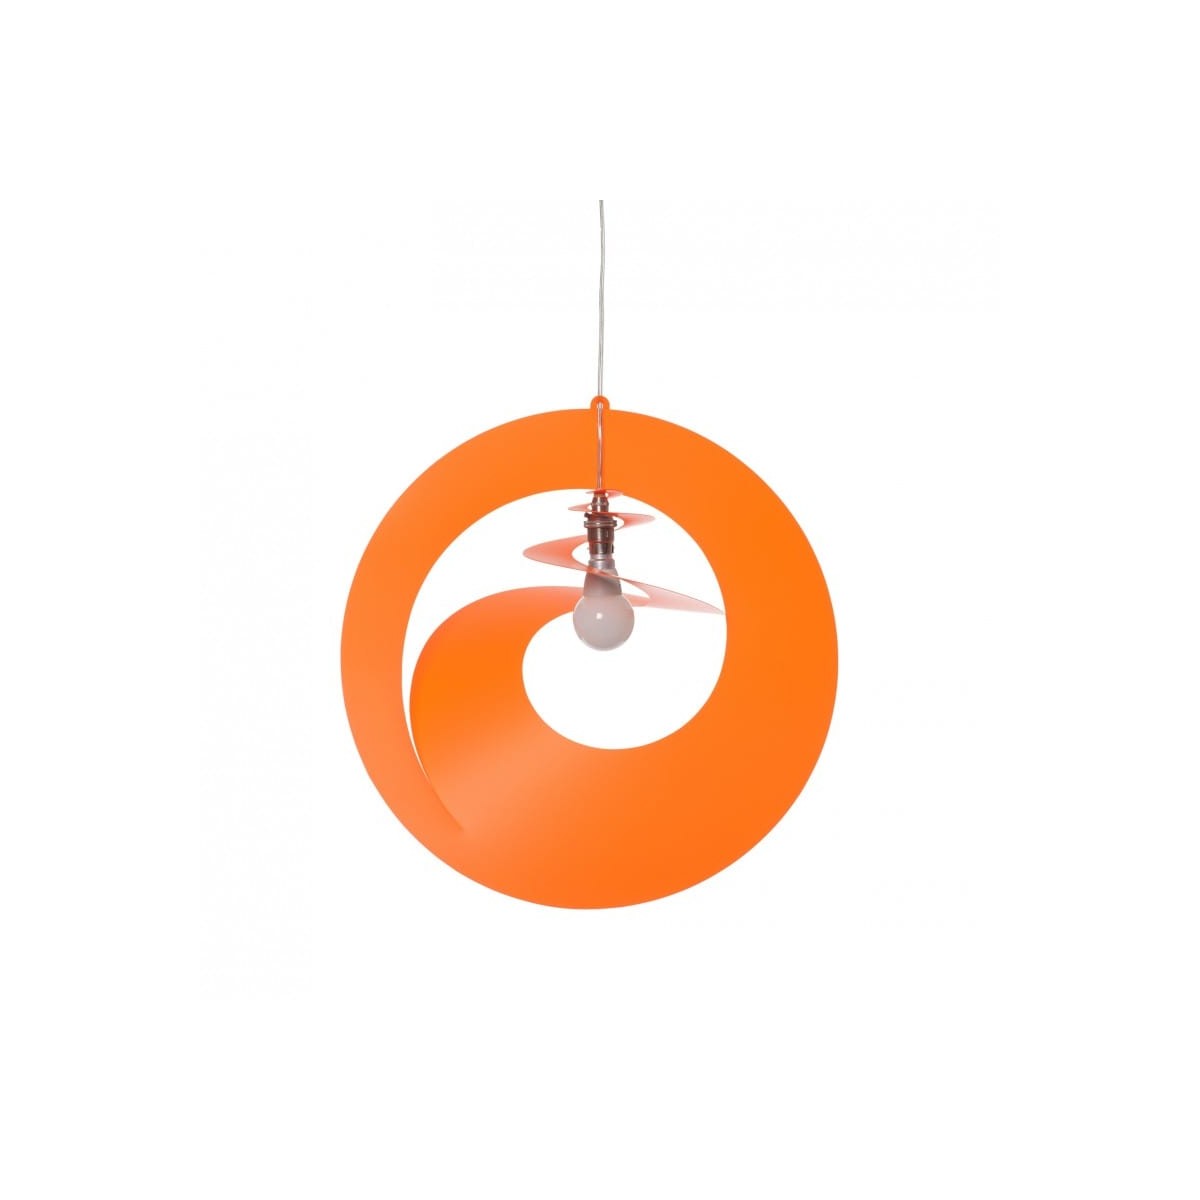 PA Design - Abat jour design orange